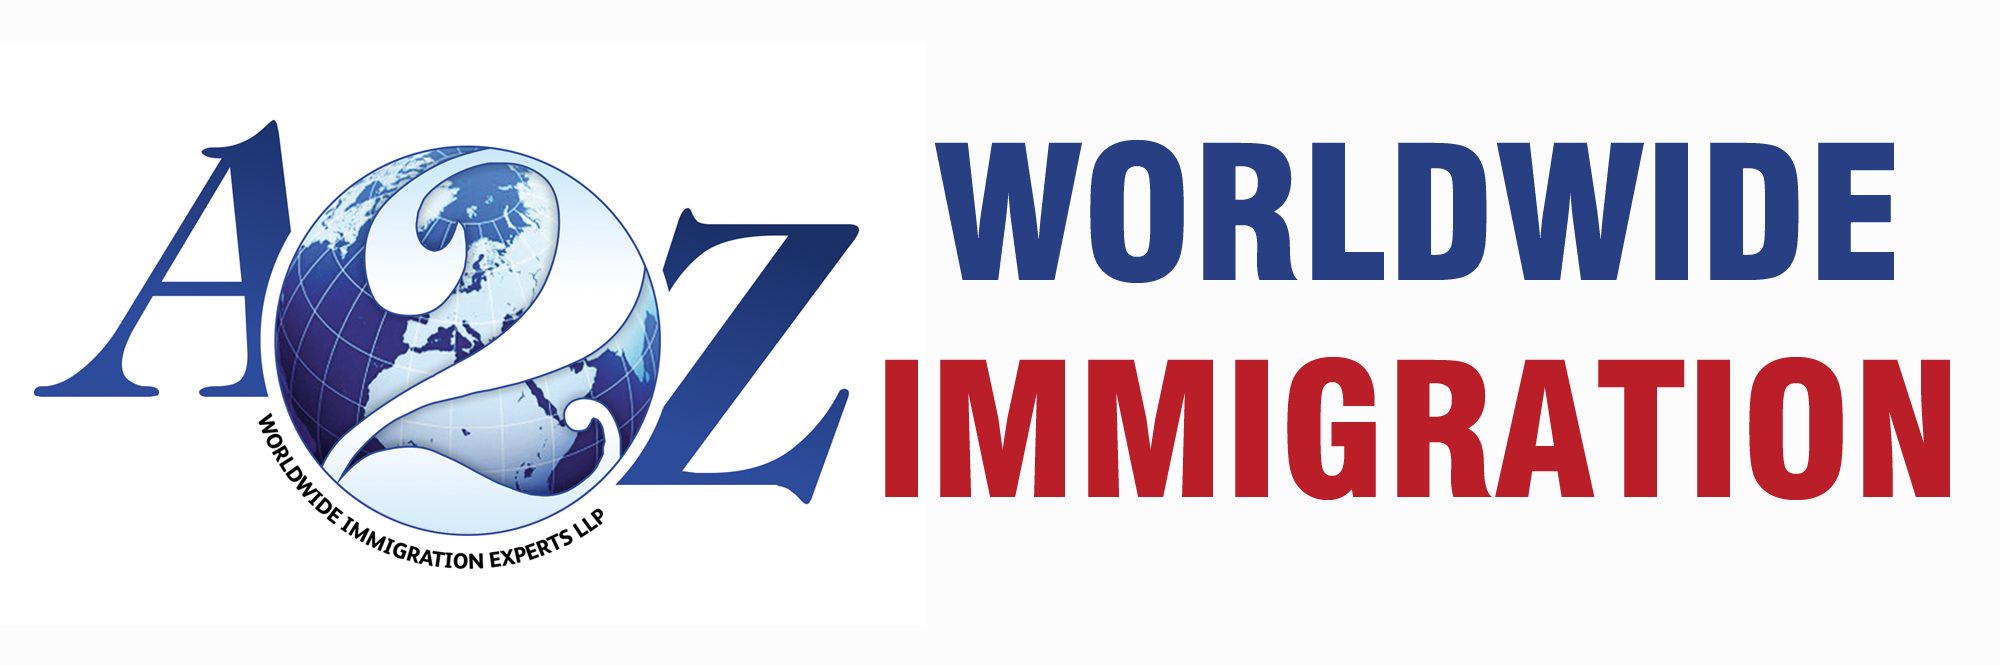 A2Z Worldwide Immigration Logo